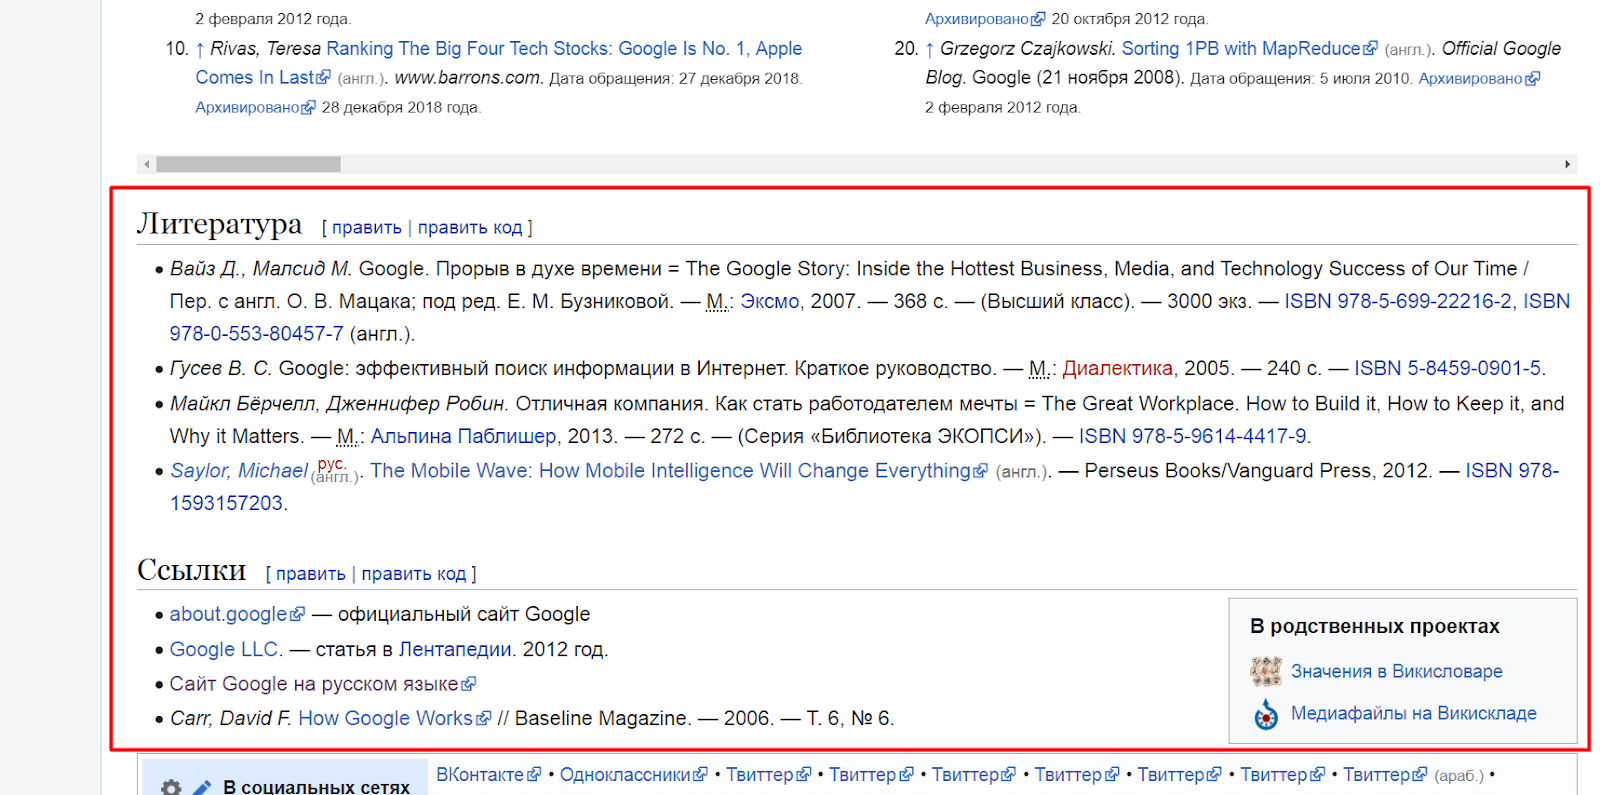 Ссылки на источники информации на странице Википедии, посвященной компании Google